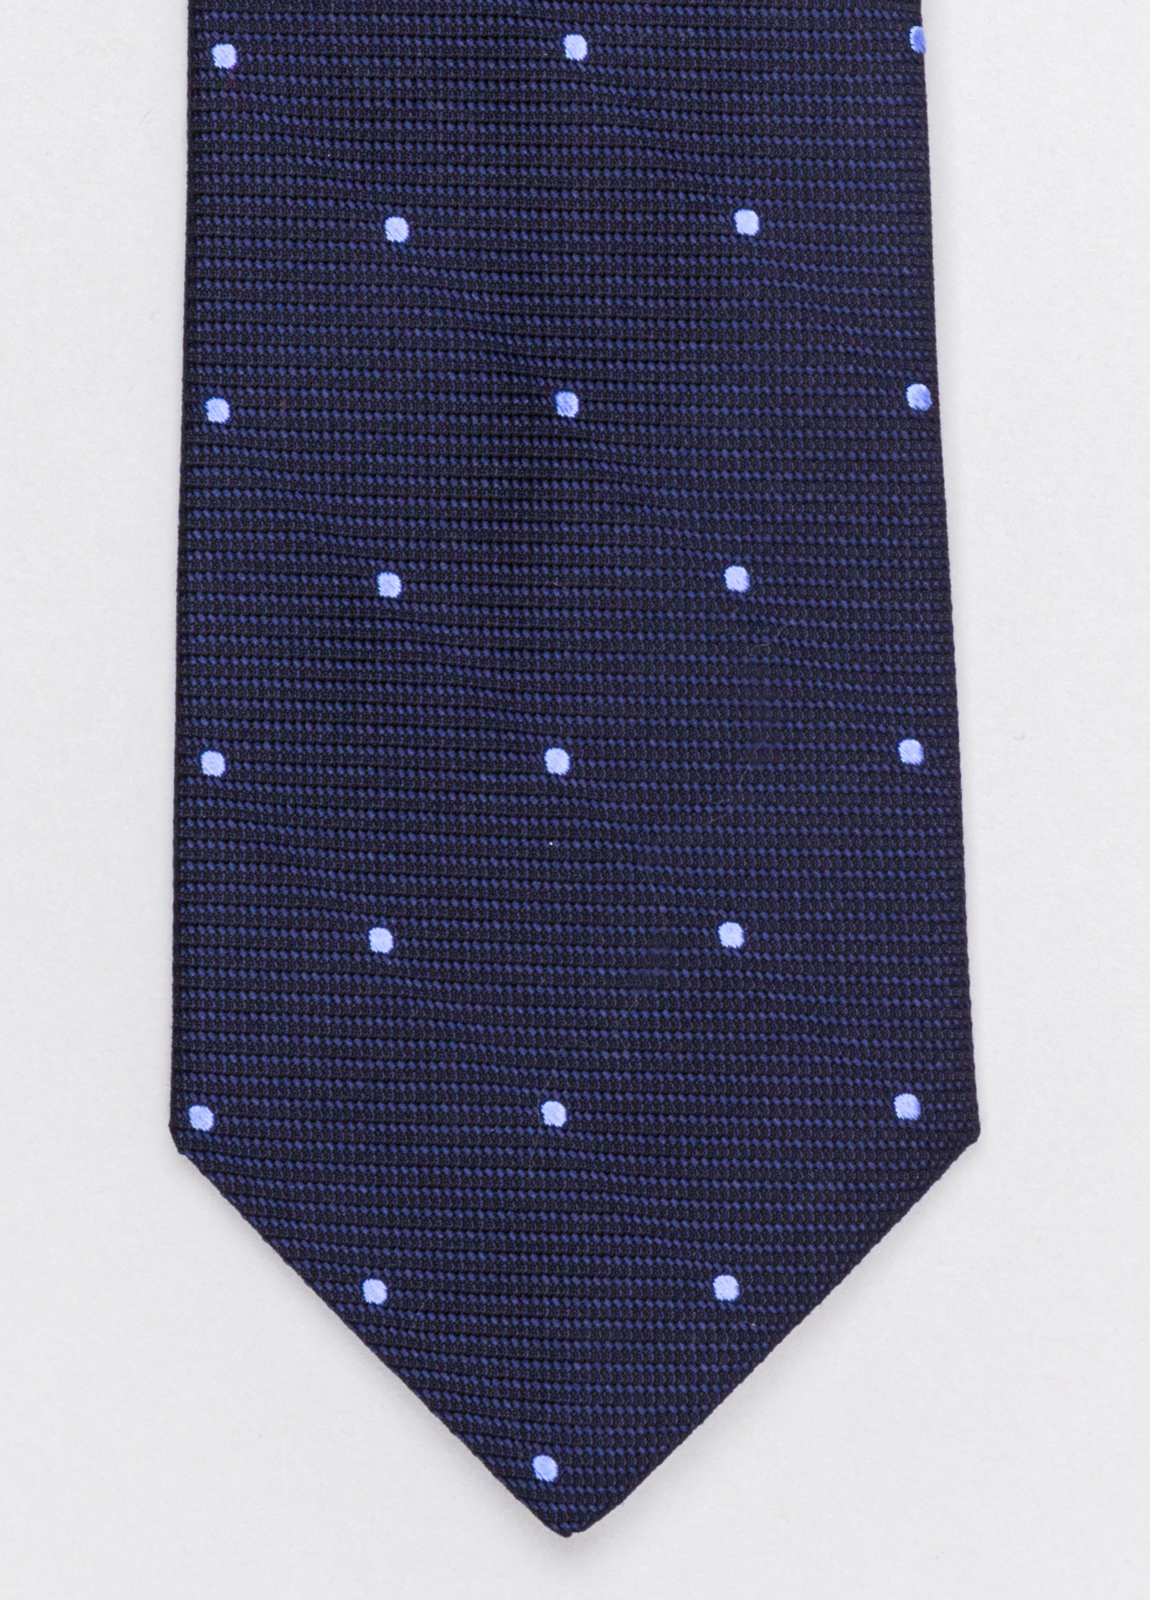 Corbata FUREST COLECCIÓN color marino con topito azul.